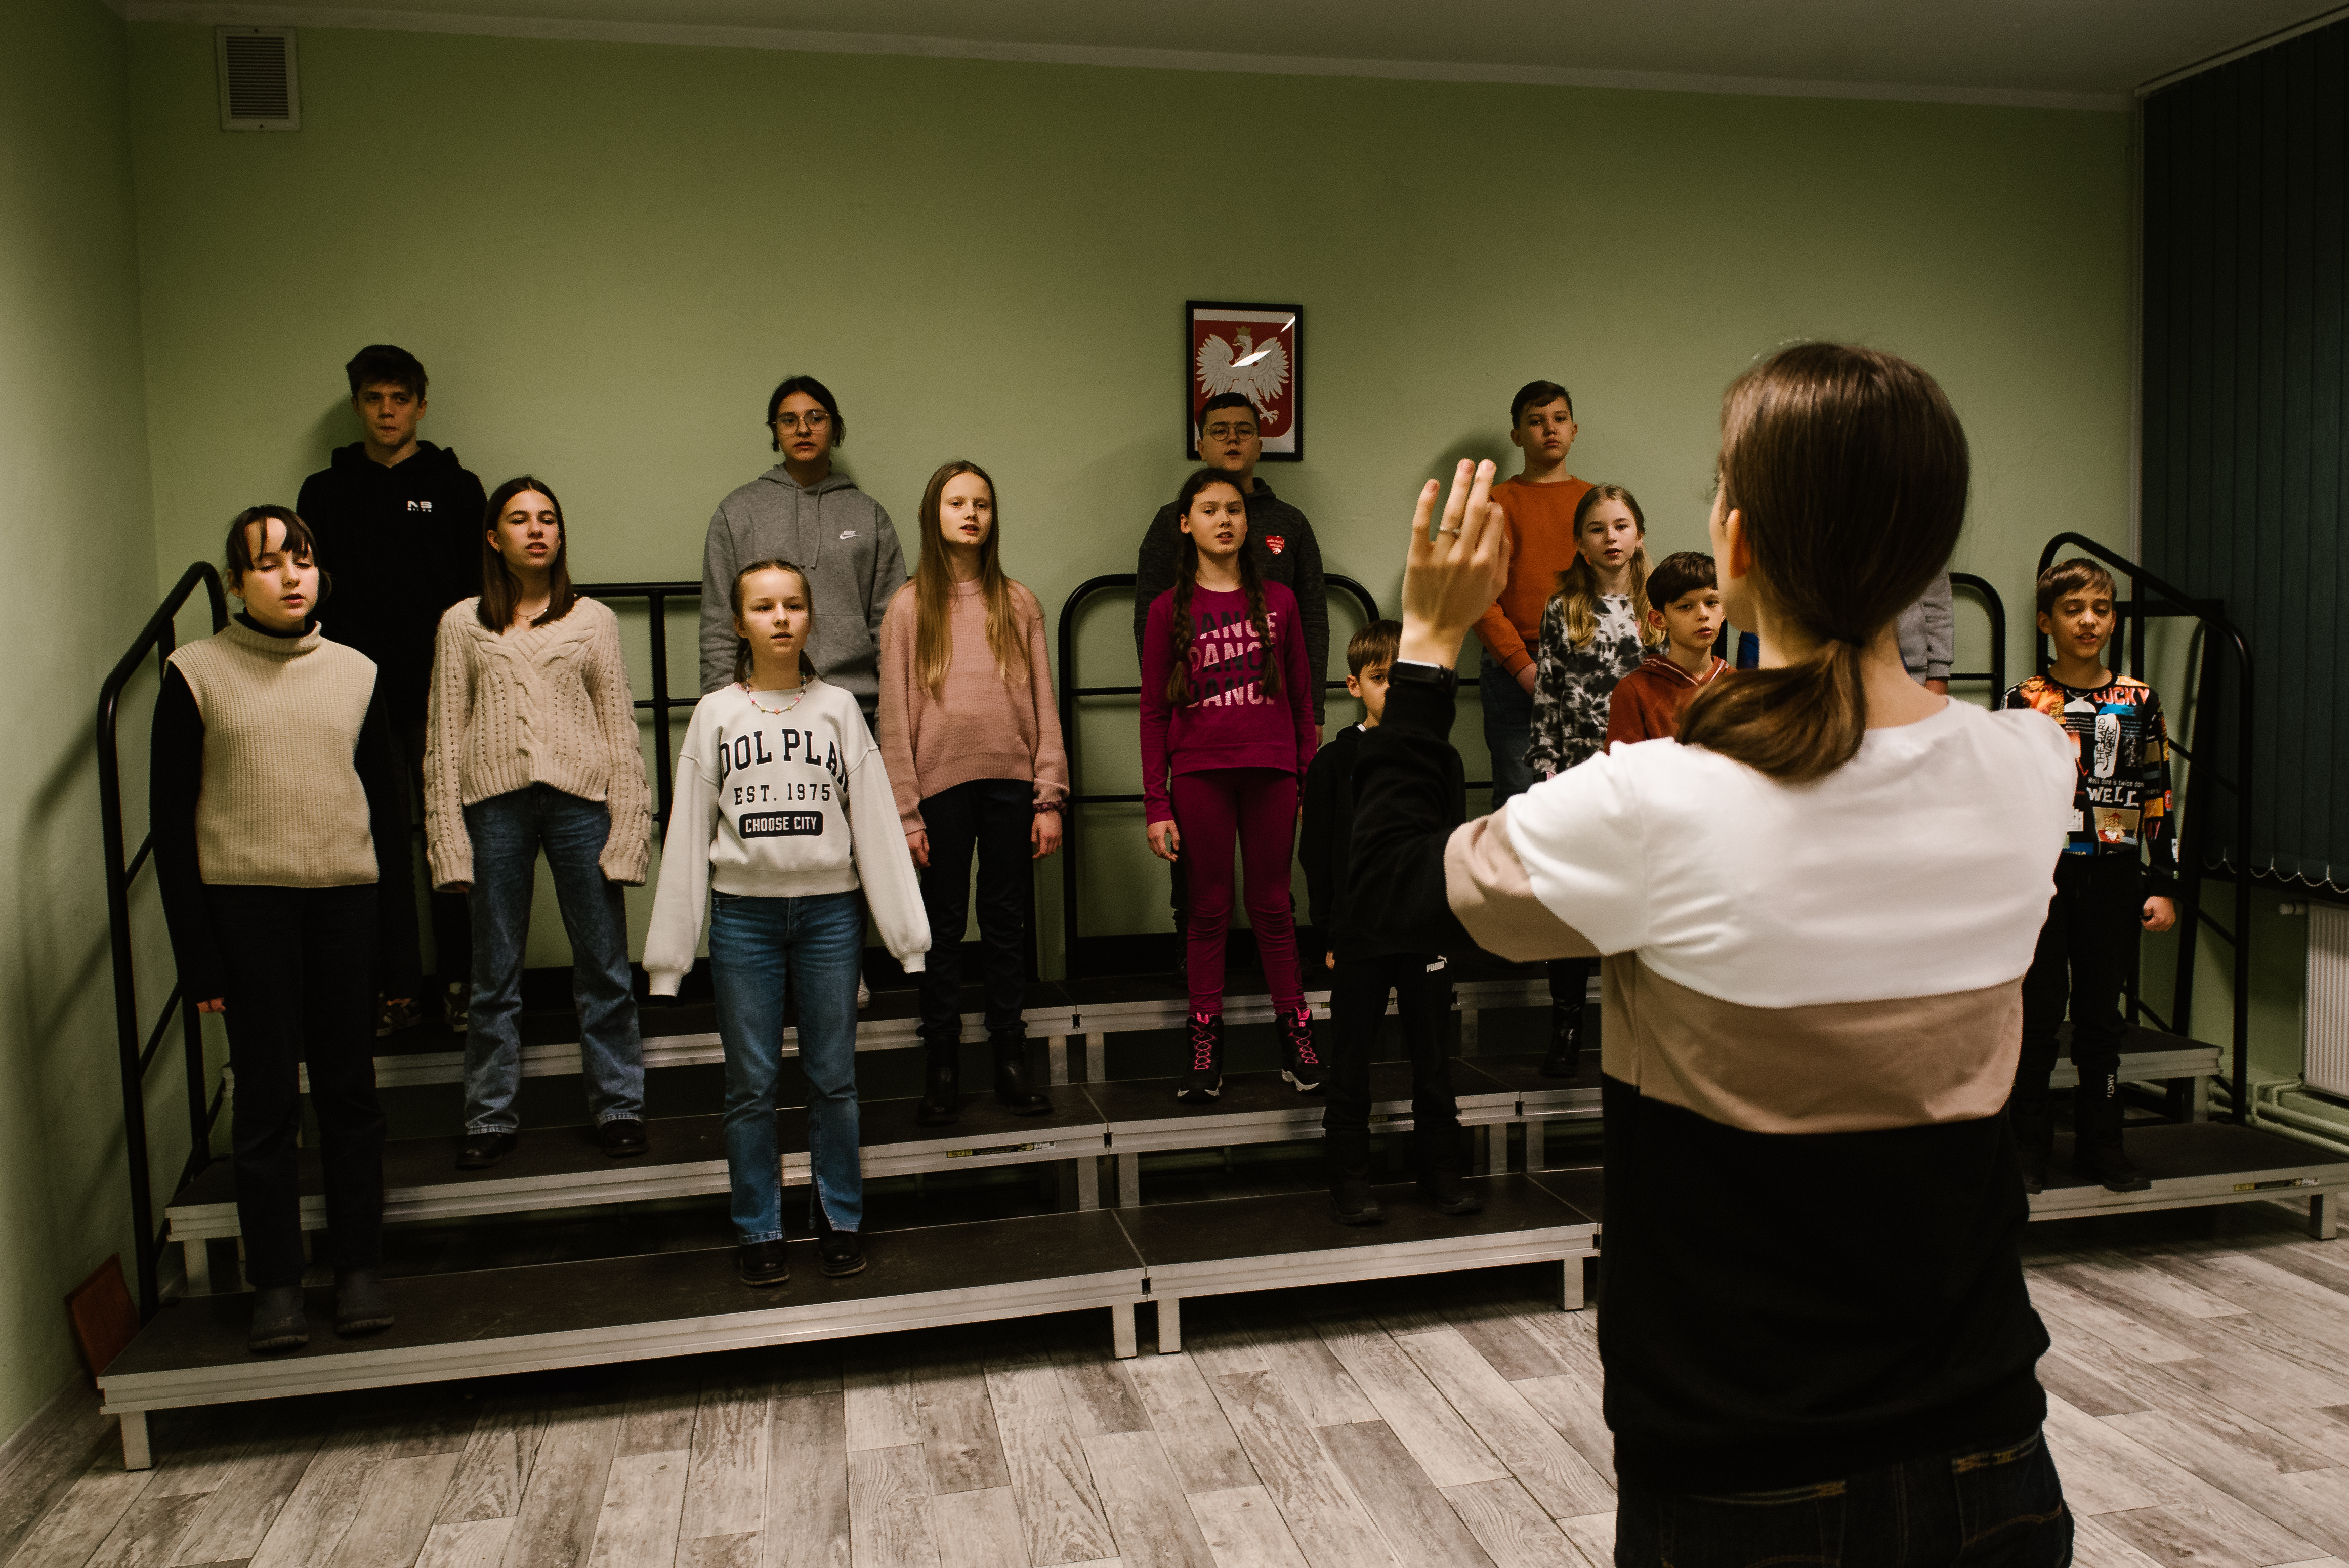 Na zdjęciu znajduje się nauczycielka Aleksandra Szymańska oraz grupa uczniów. Nauczycielka stoi przodem do dzieci z uniesionymi rękami, dyrygując śpiewającym uczniom stojącym na podeście. Na ścianie wisi godło polski. 